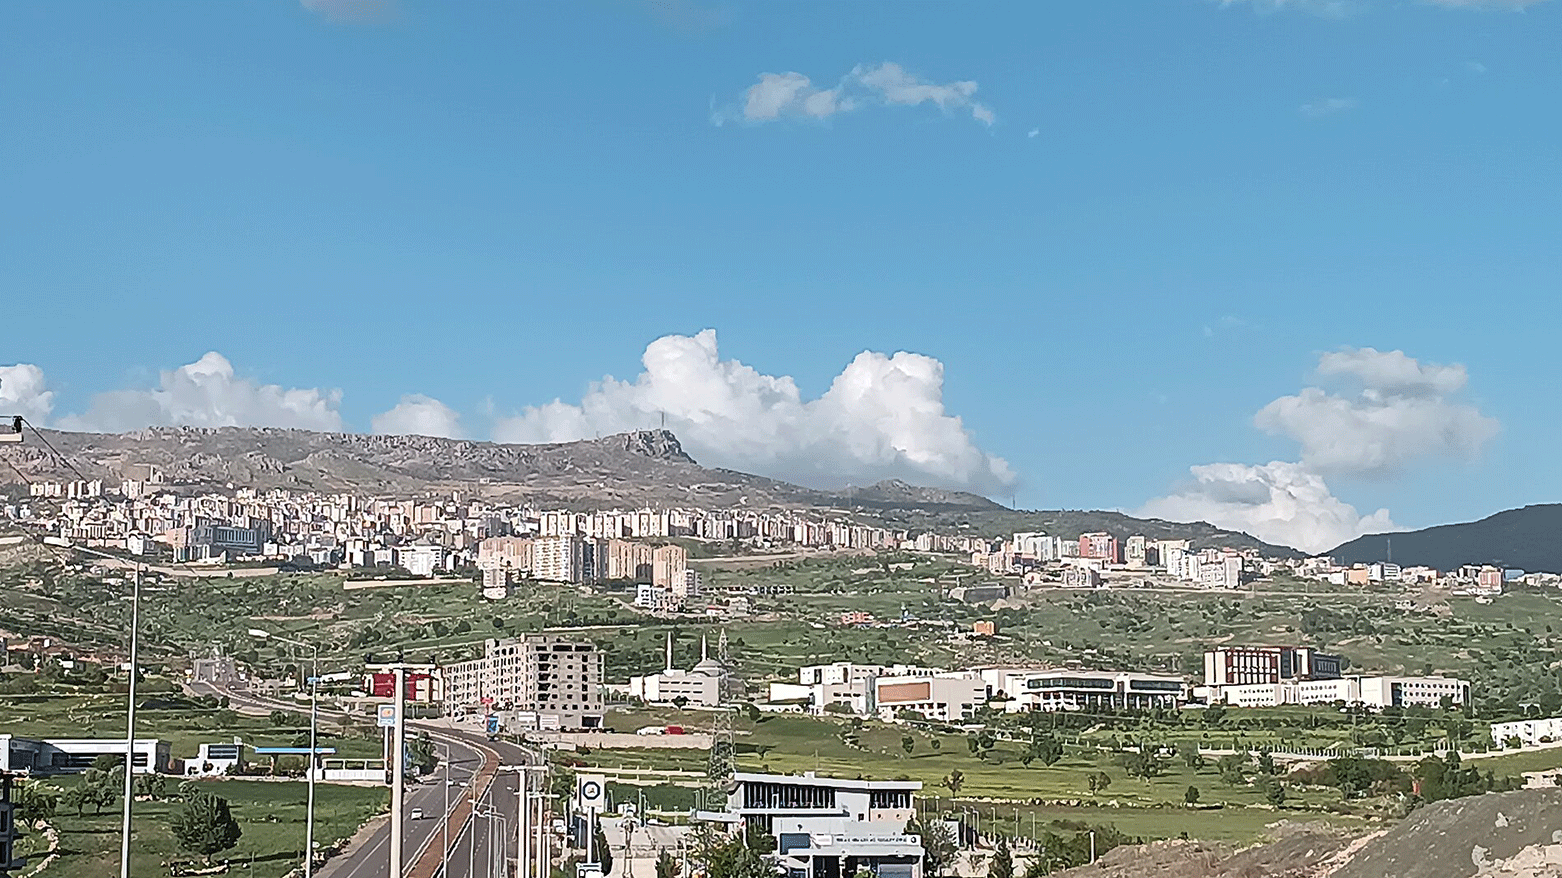 Şırnak city. (Photo: Wikidata)